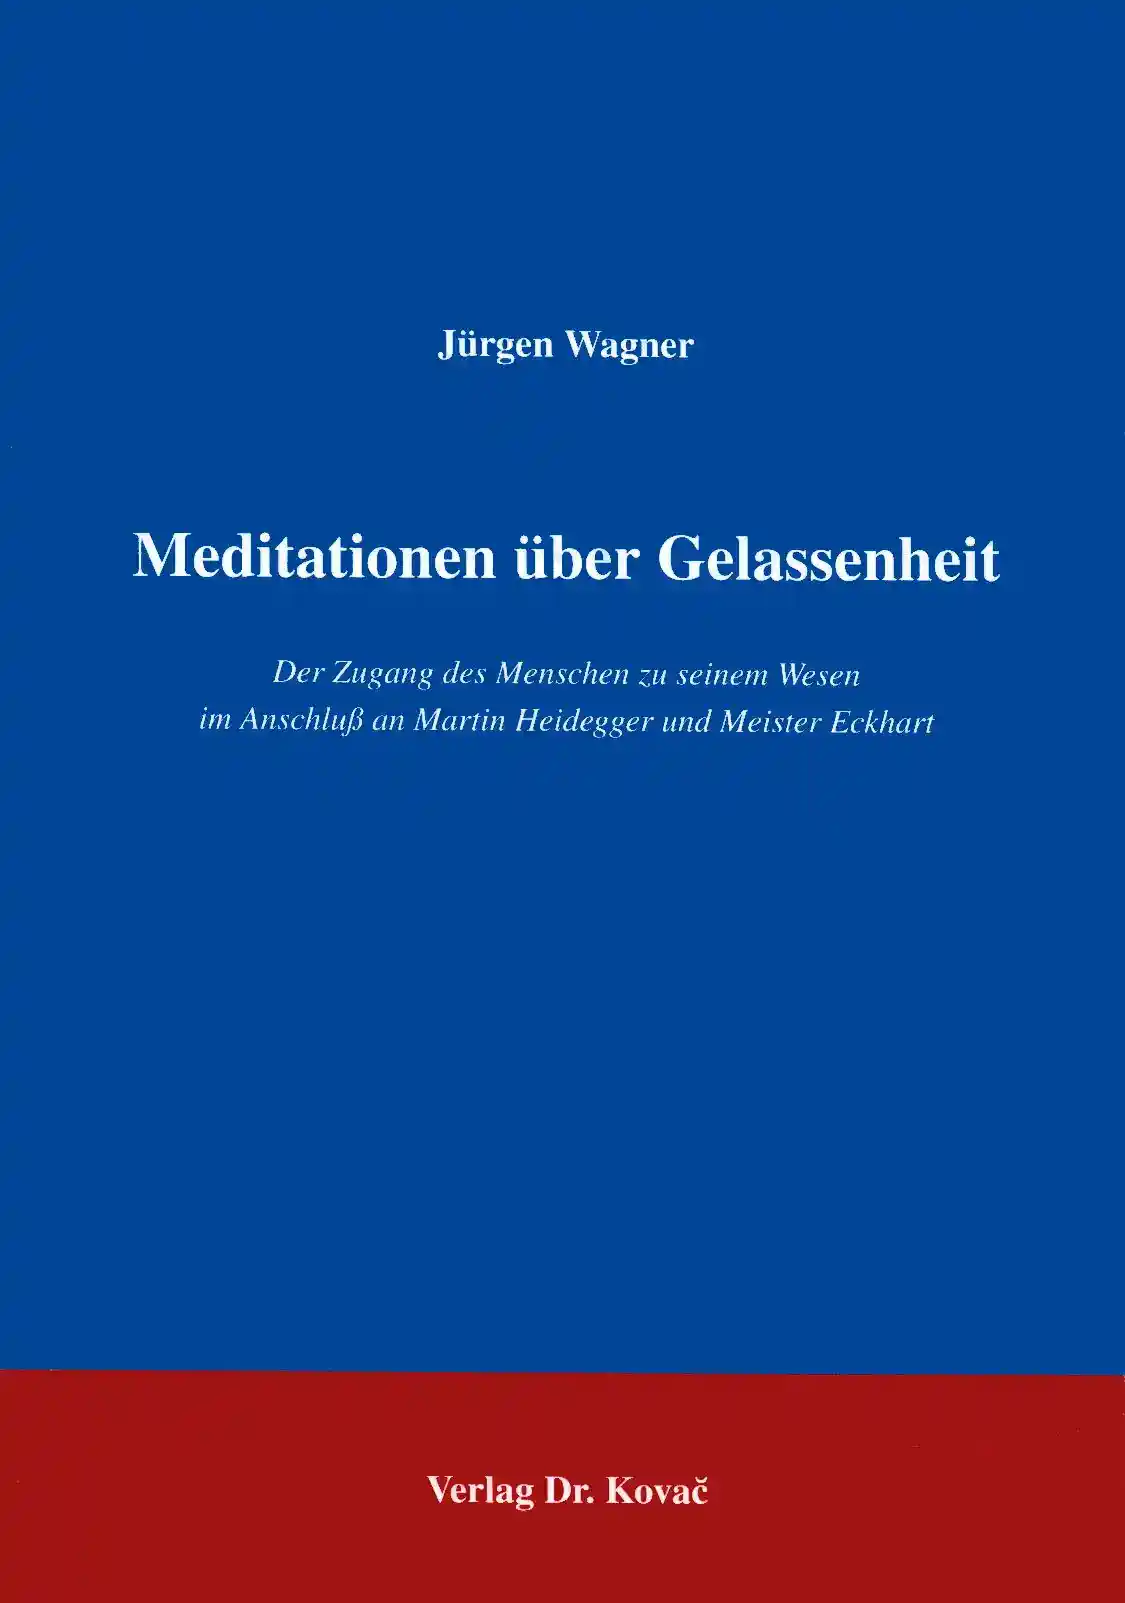 Meditationen über Gelassenheit (Forschungsarbeit)